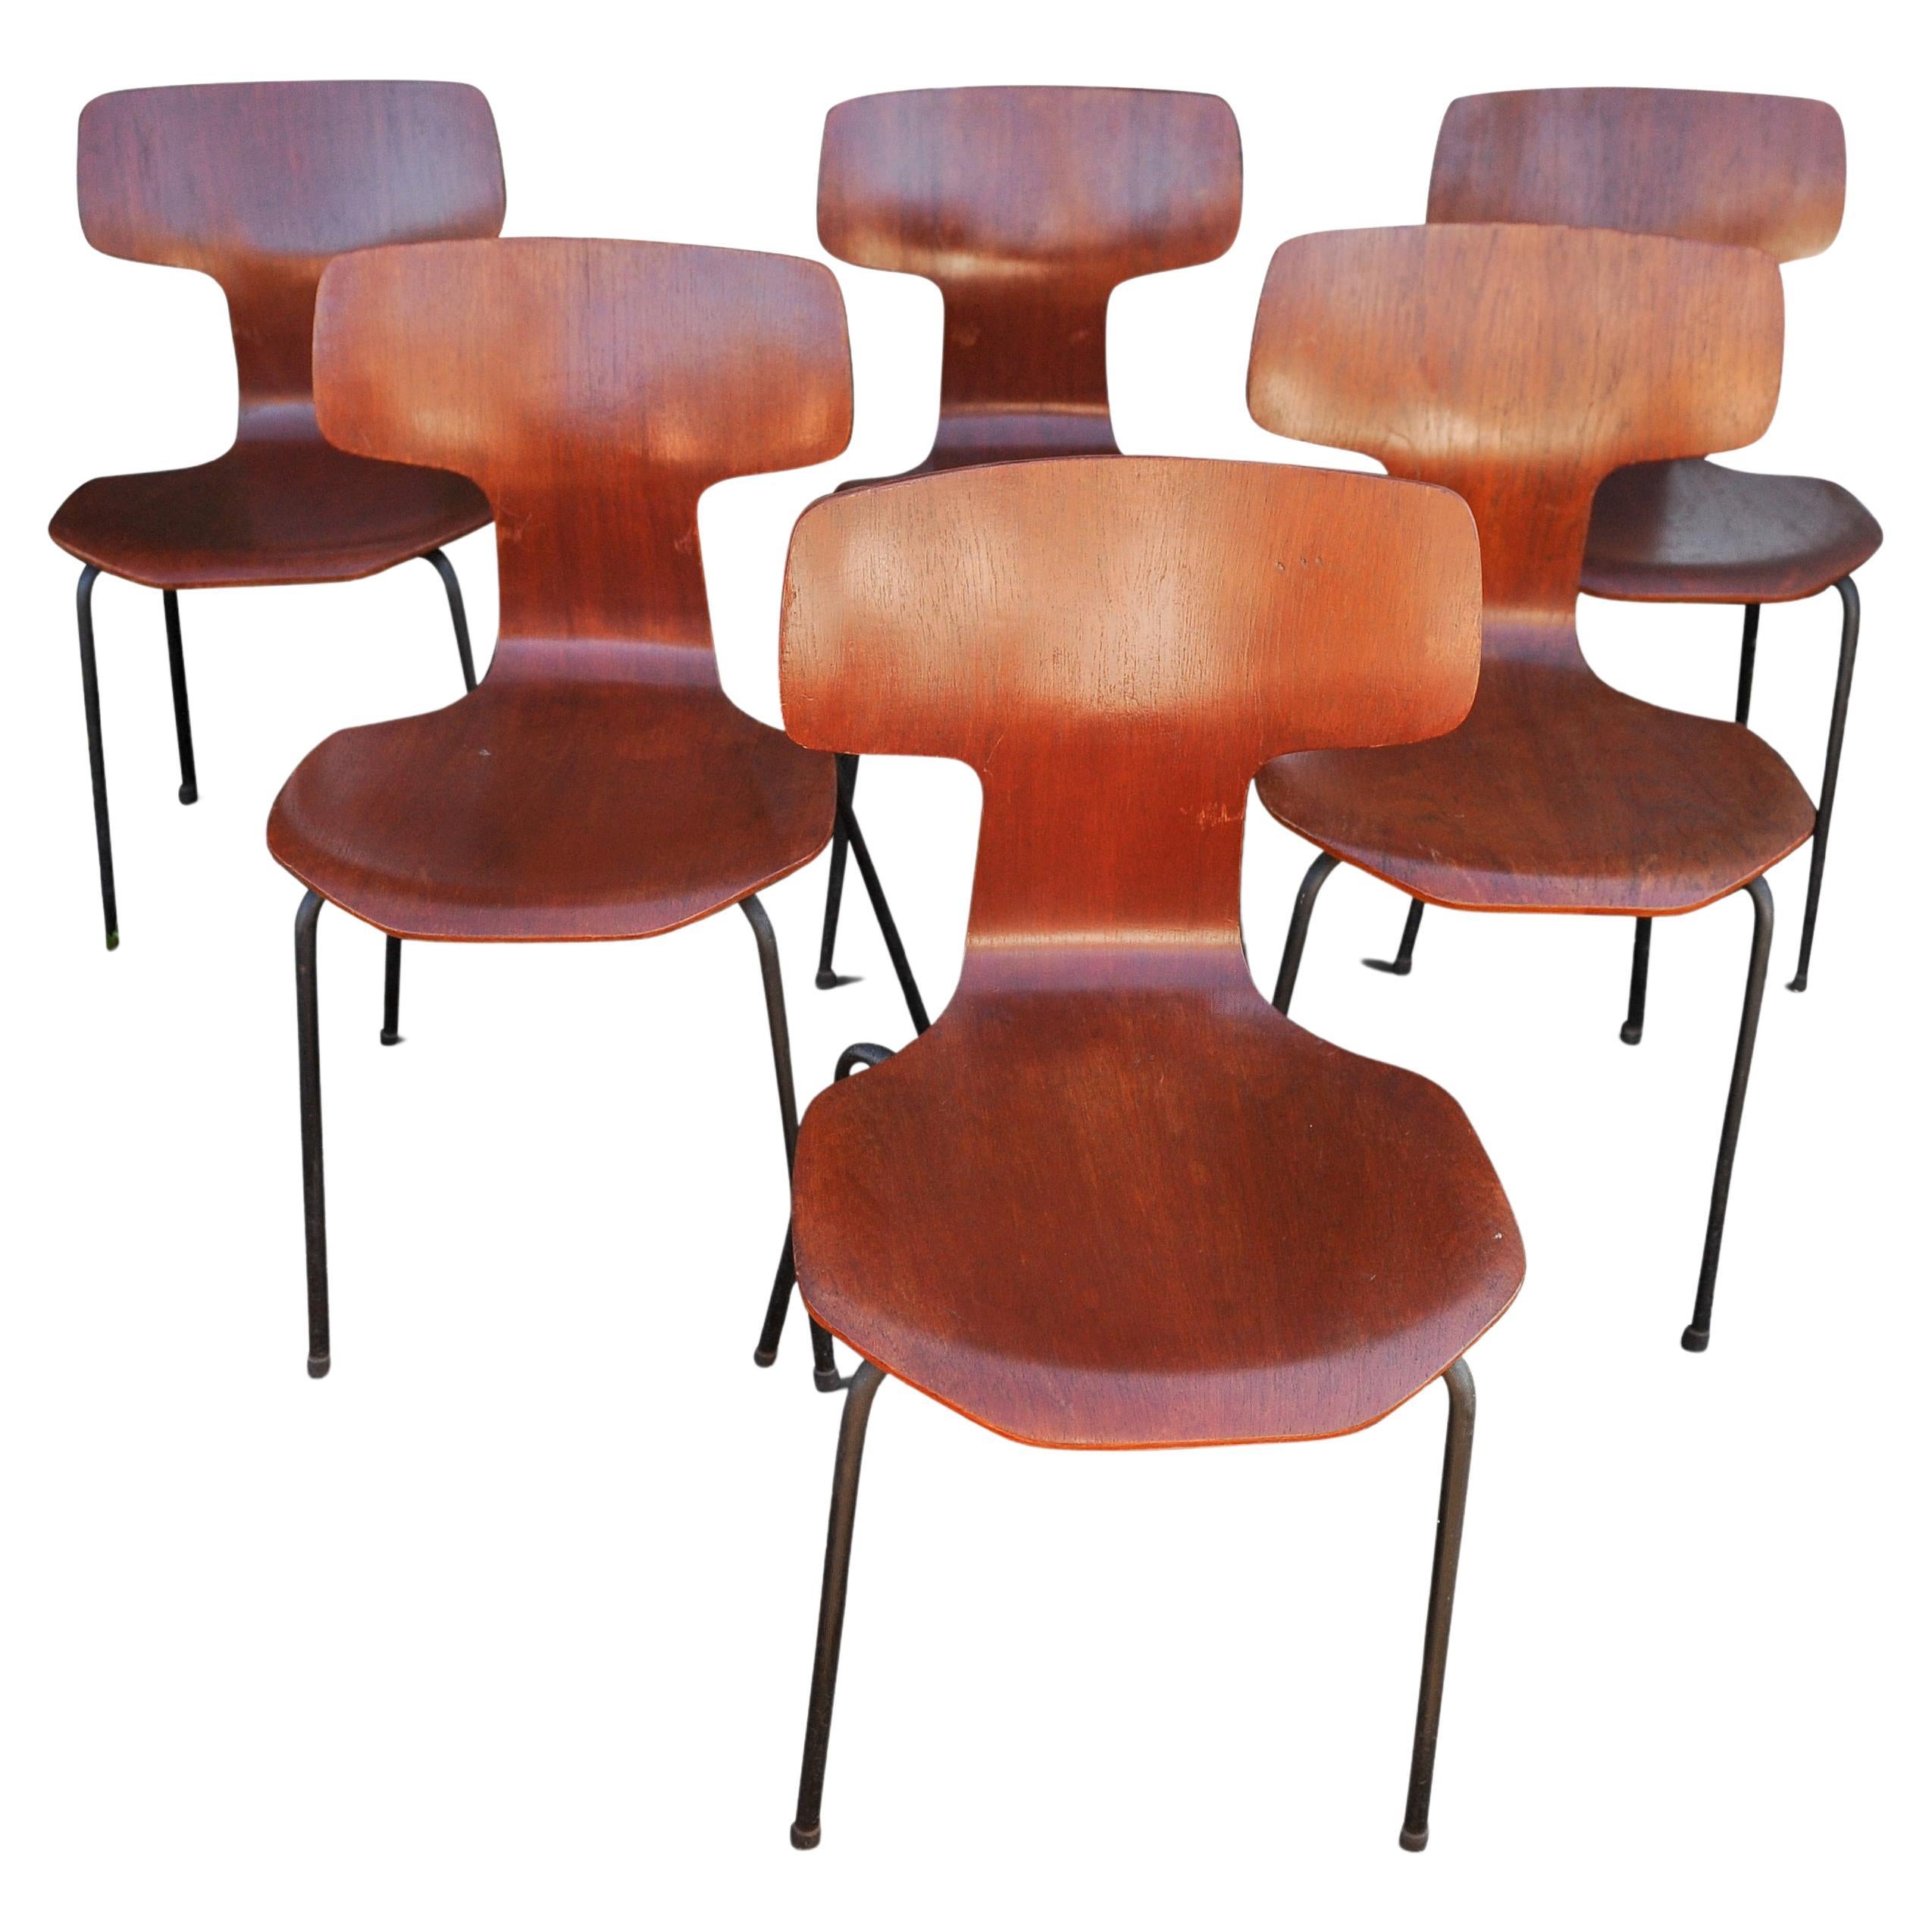 Original Labelled Arne Jacobsen for Fritz Hansen Model 3103 "Hammer Chair" 1965 For Sale